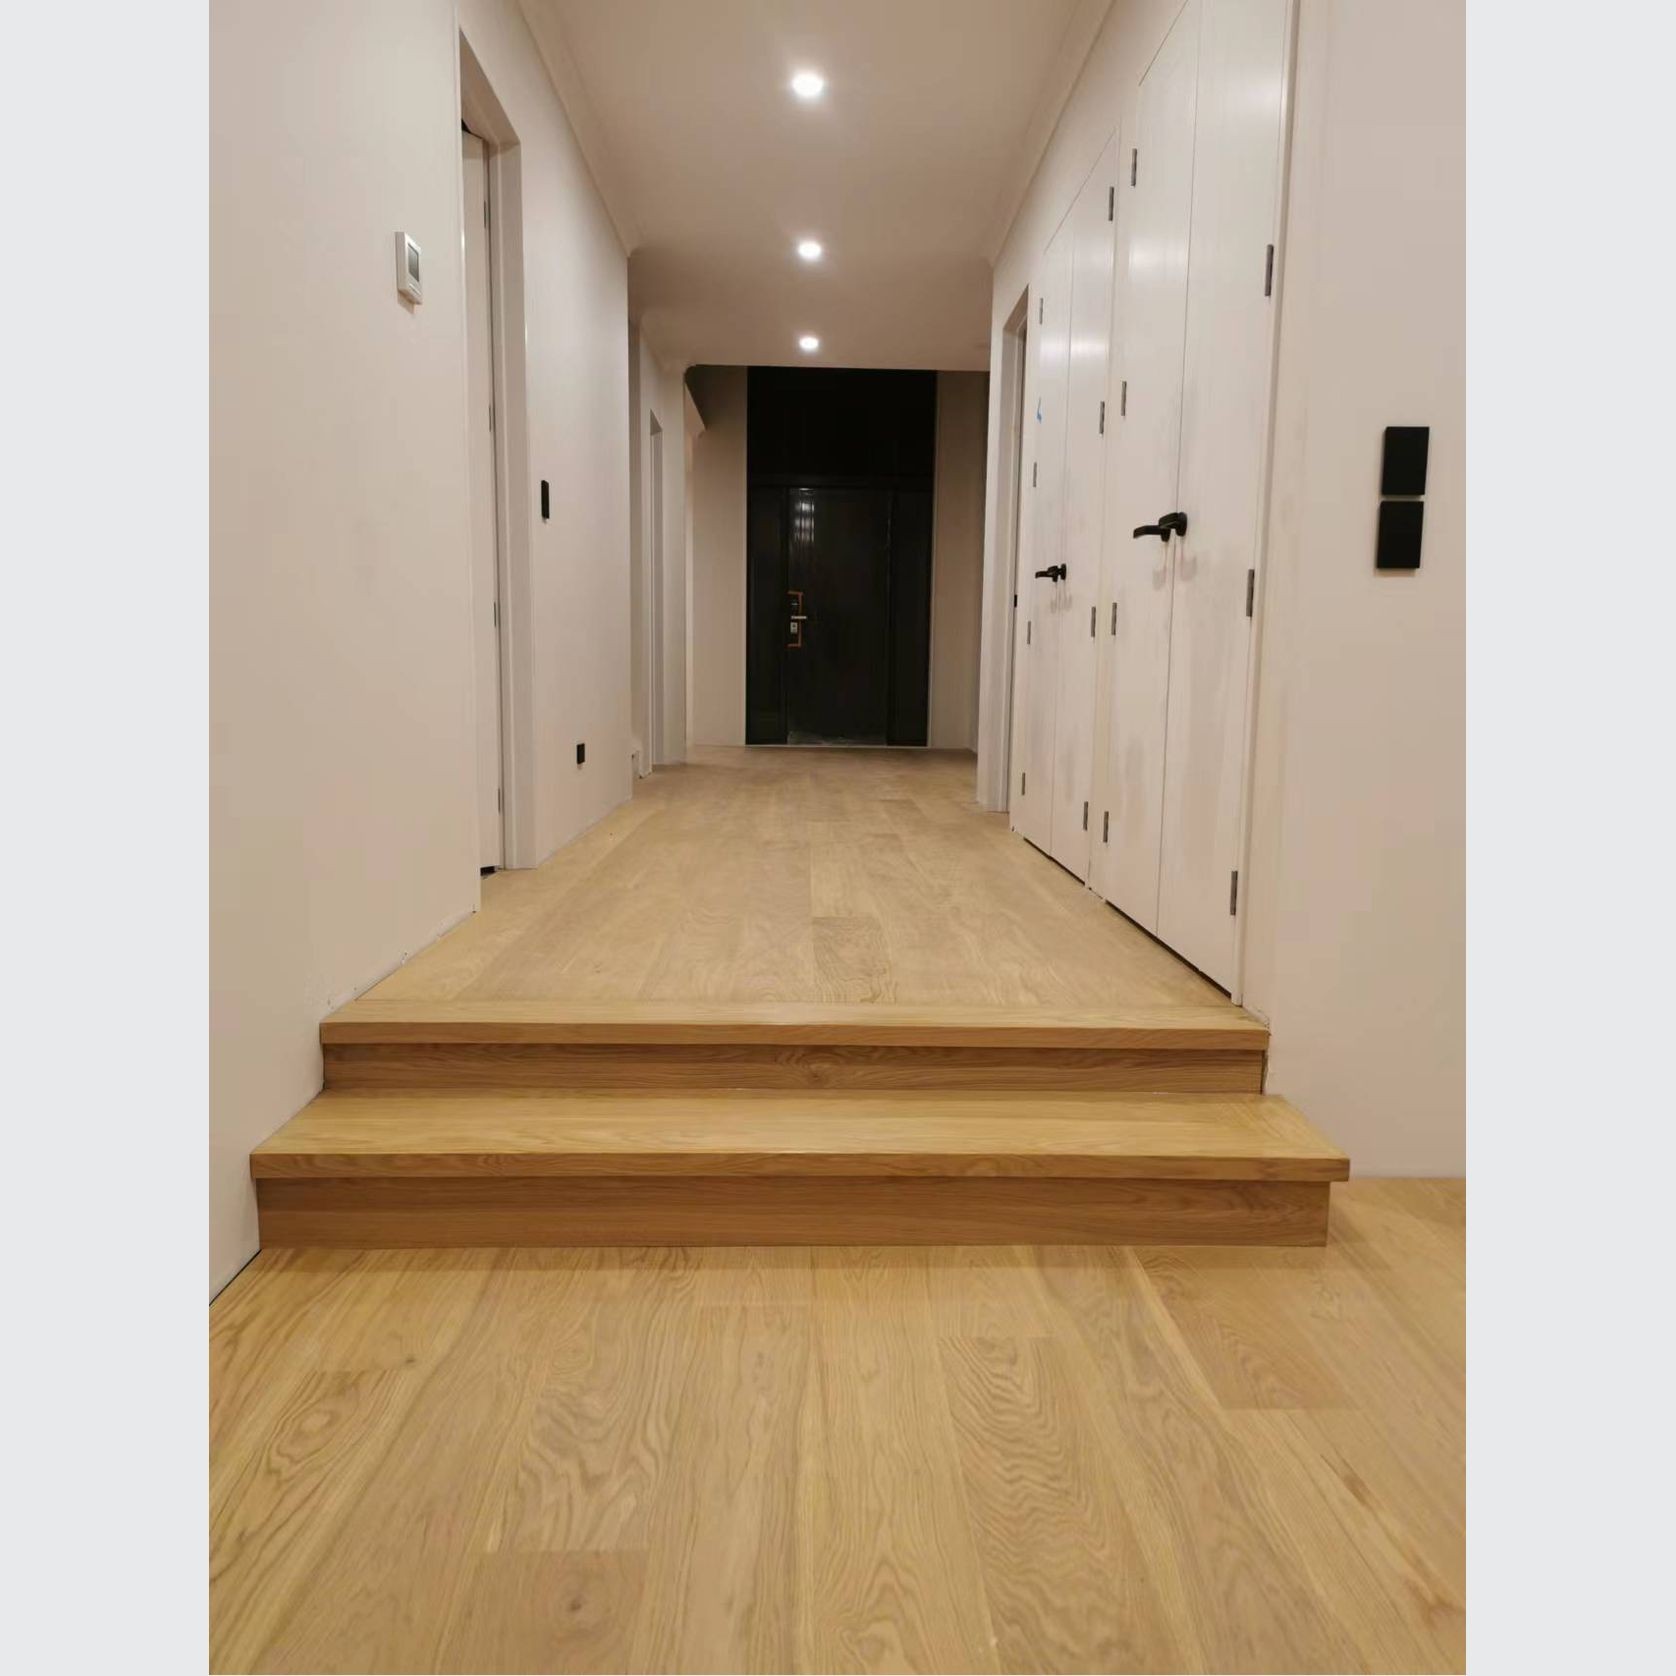 ESTA European Oak Engineered Wood Floor gallery detail image